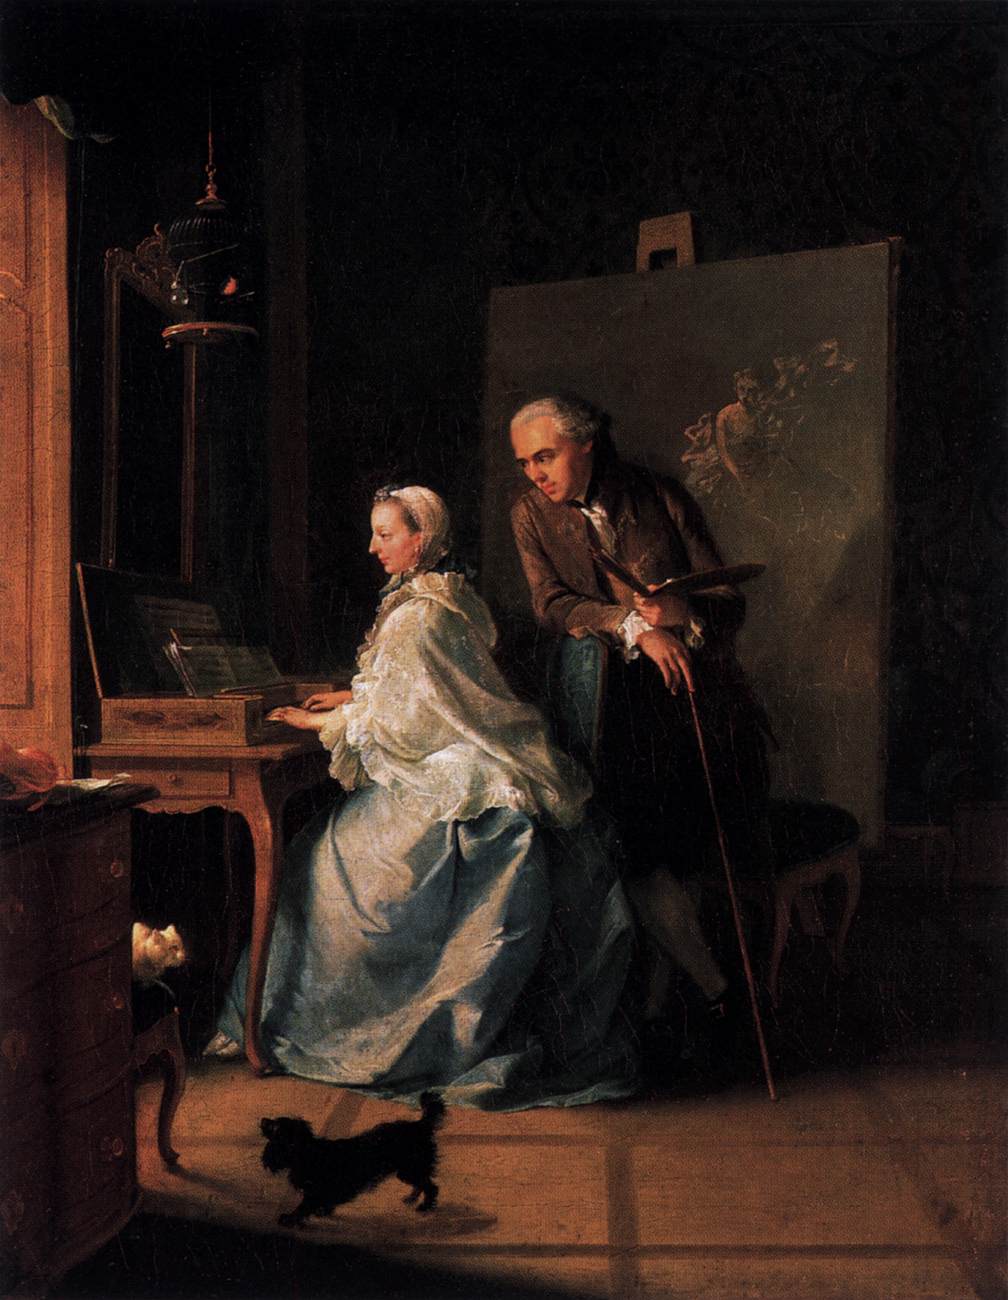 Portræt af kunstneren og hans kone i spineta